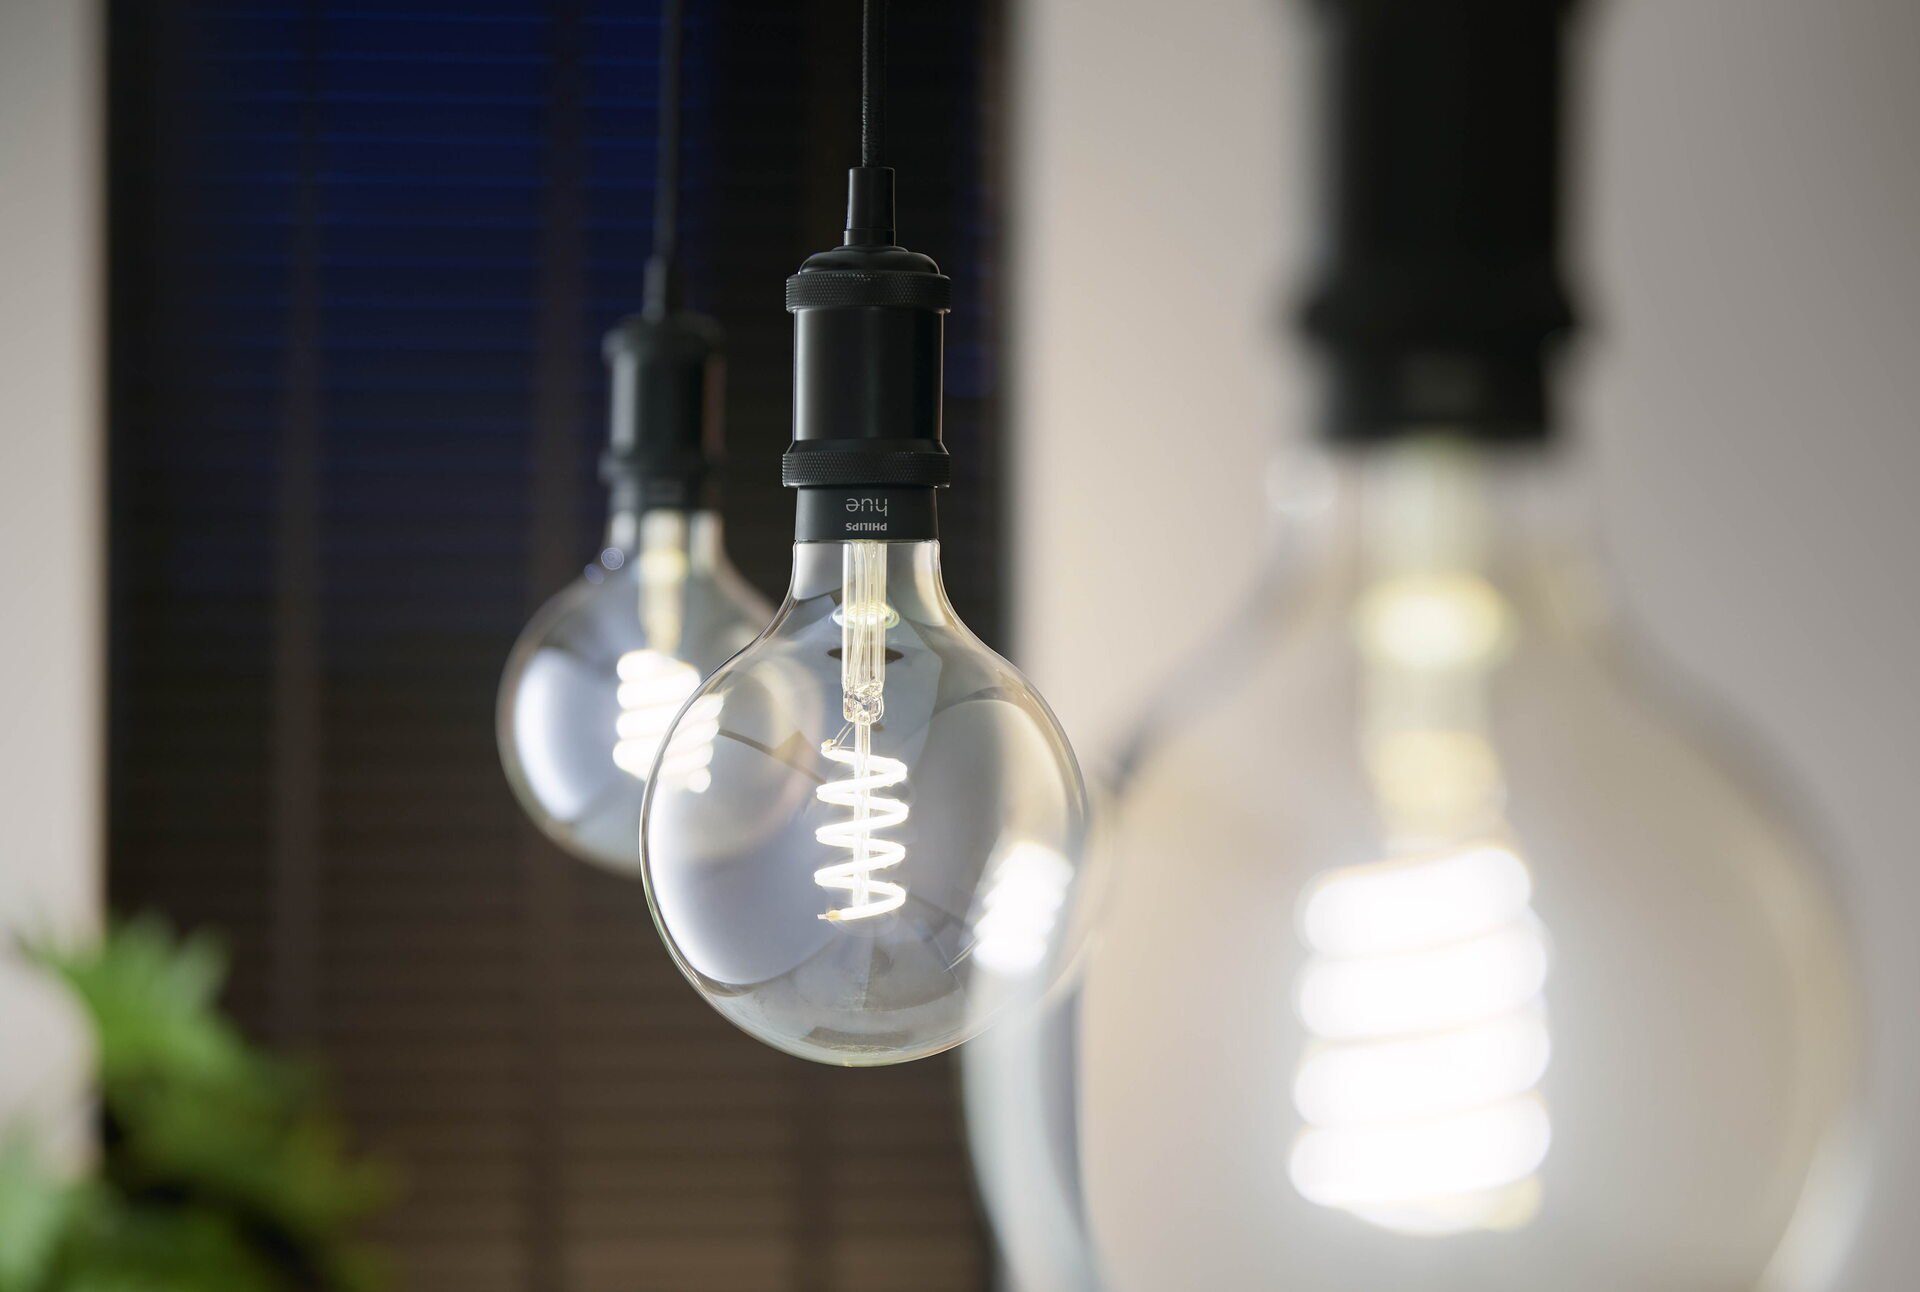 Philips Hue LED-Filament White Amb. GiantGlobe CCT-Farbtemperatursteuerung St., G125 tageslichtweiß Einzelp Filam Warmweiß, 300lm, E27, 1 - warmweiß bis E27